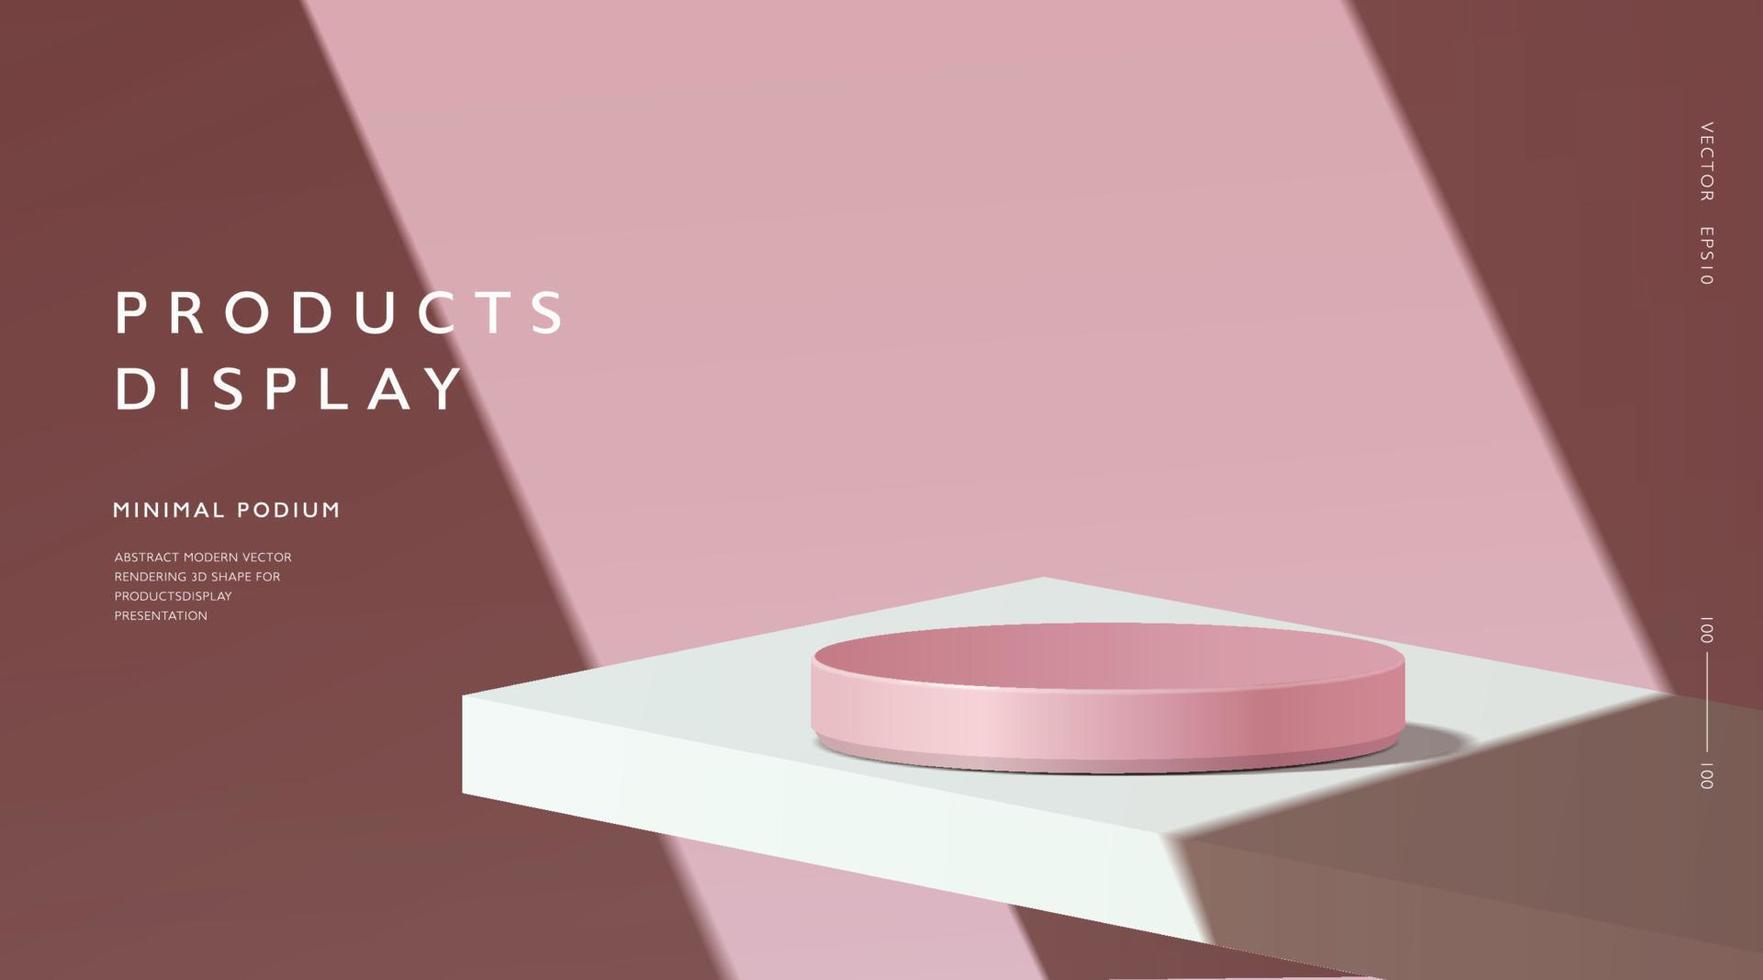 abstrakt minimal scen, cylinderpodium i rosa bakgrund för produktpresentationsskärmar. vektor